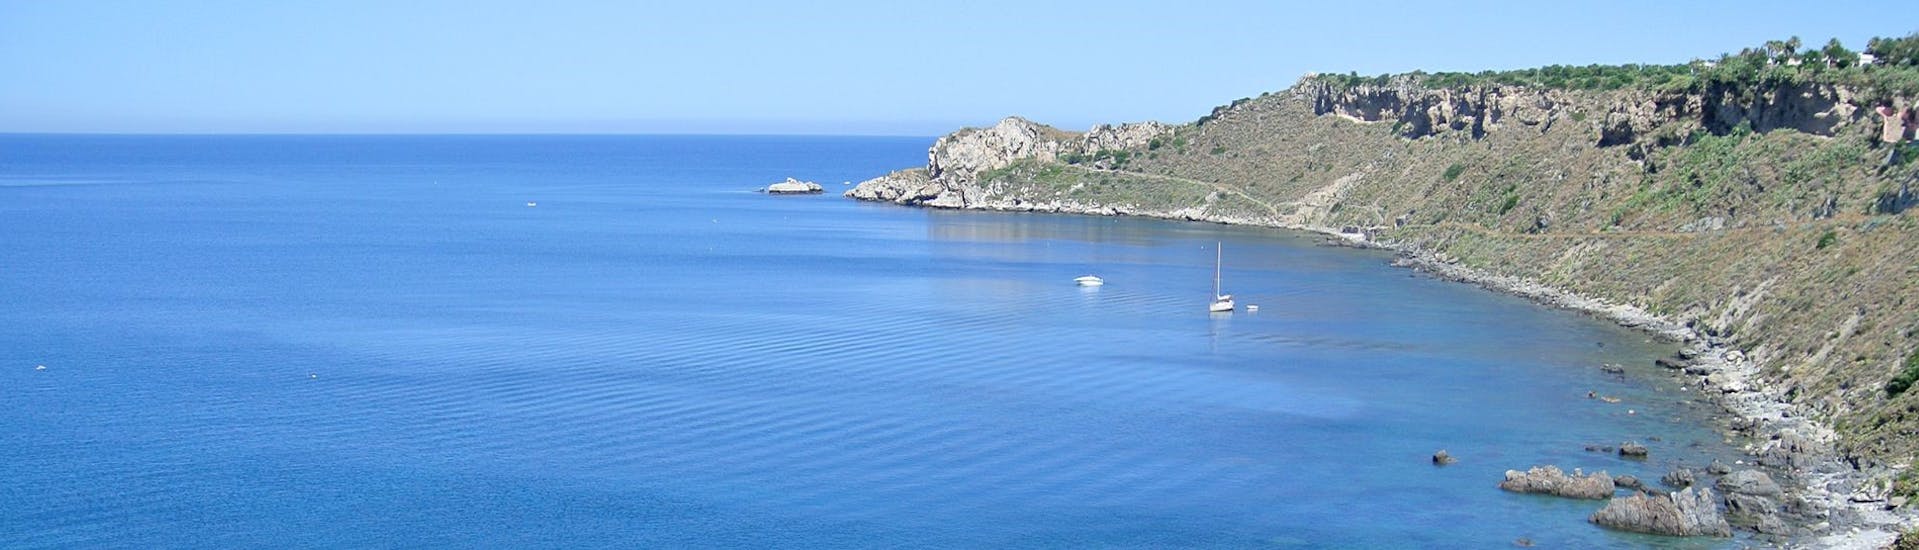 Vista desde el barco de Sky Sea Charter durante el paseo en barco privado de Milazzo a Panarea y Stromboli.